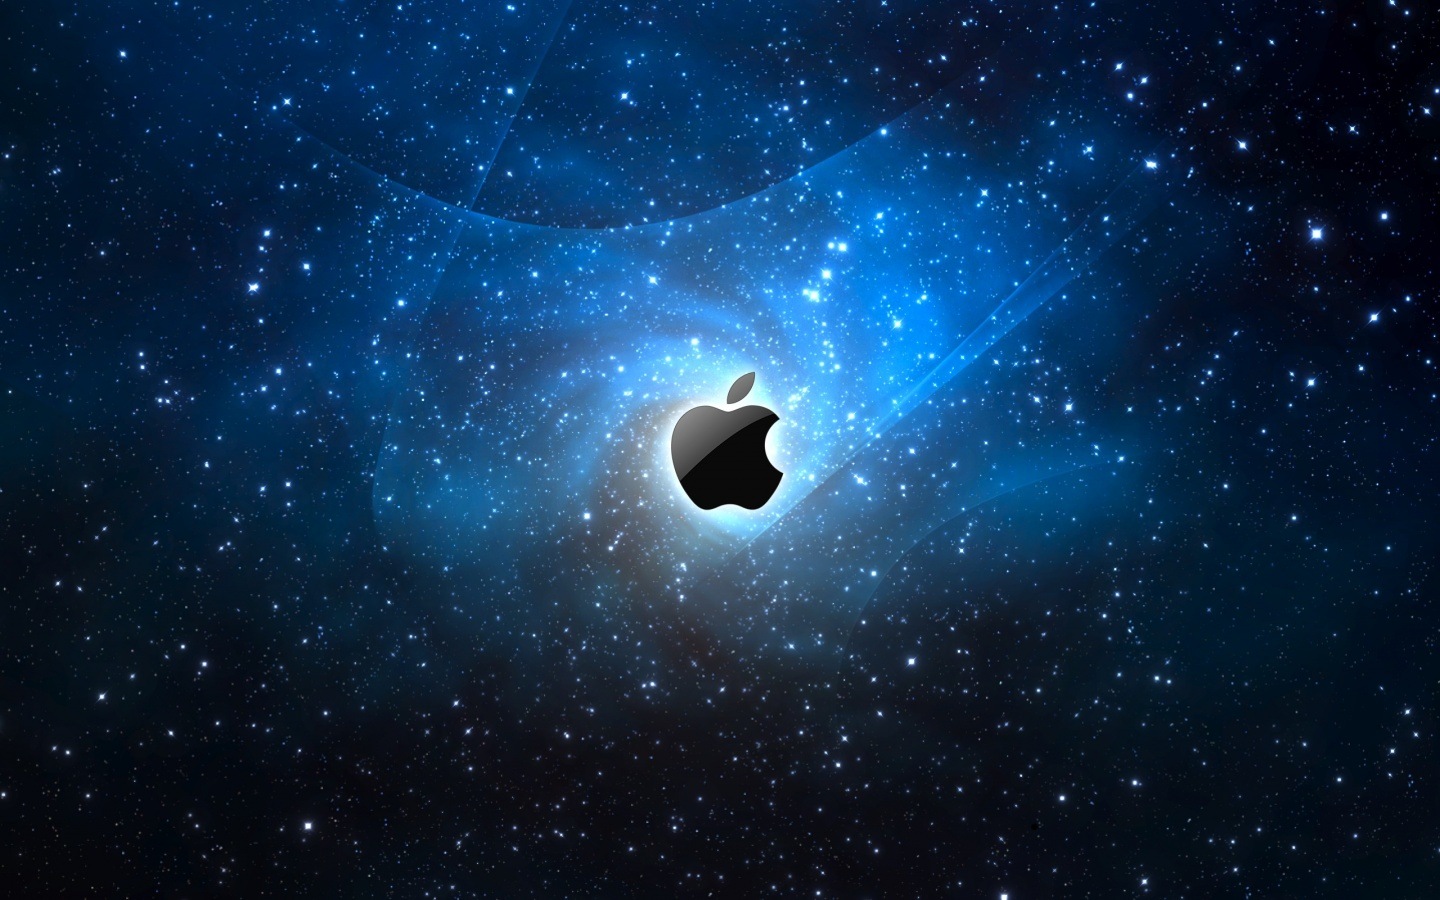 Apple Space HD Fondos de Pantalla   Imagenes Hd  Fondos gratis